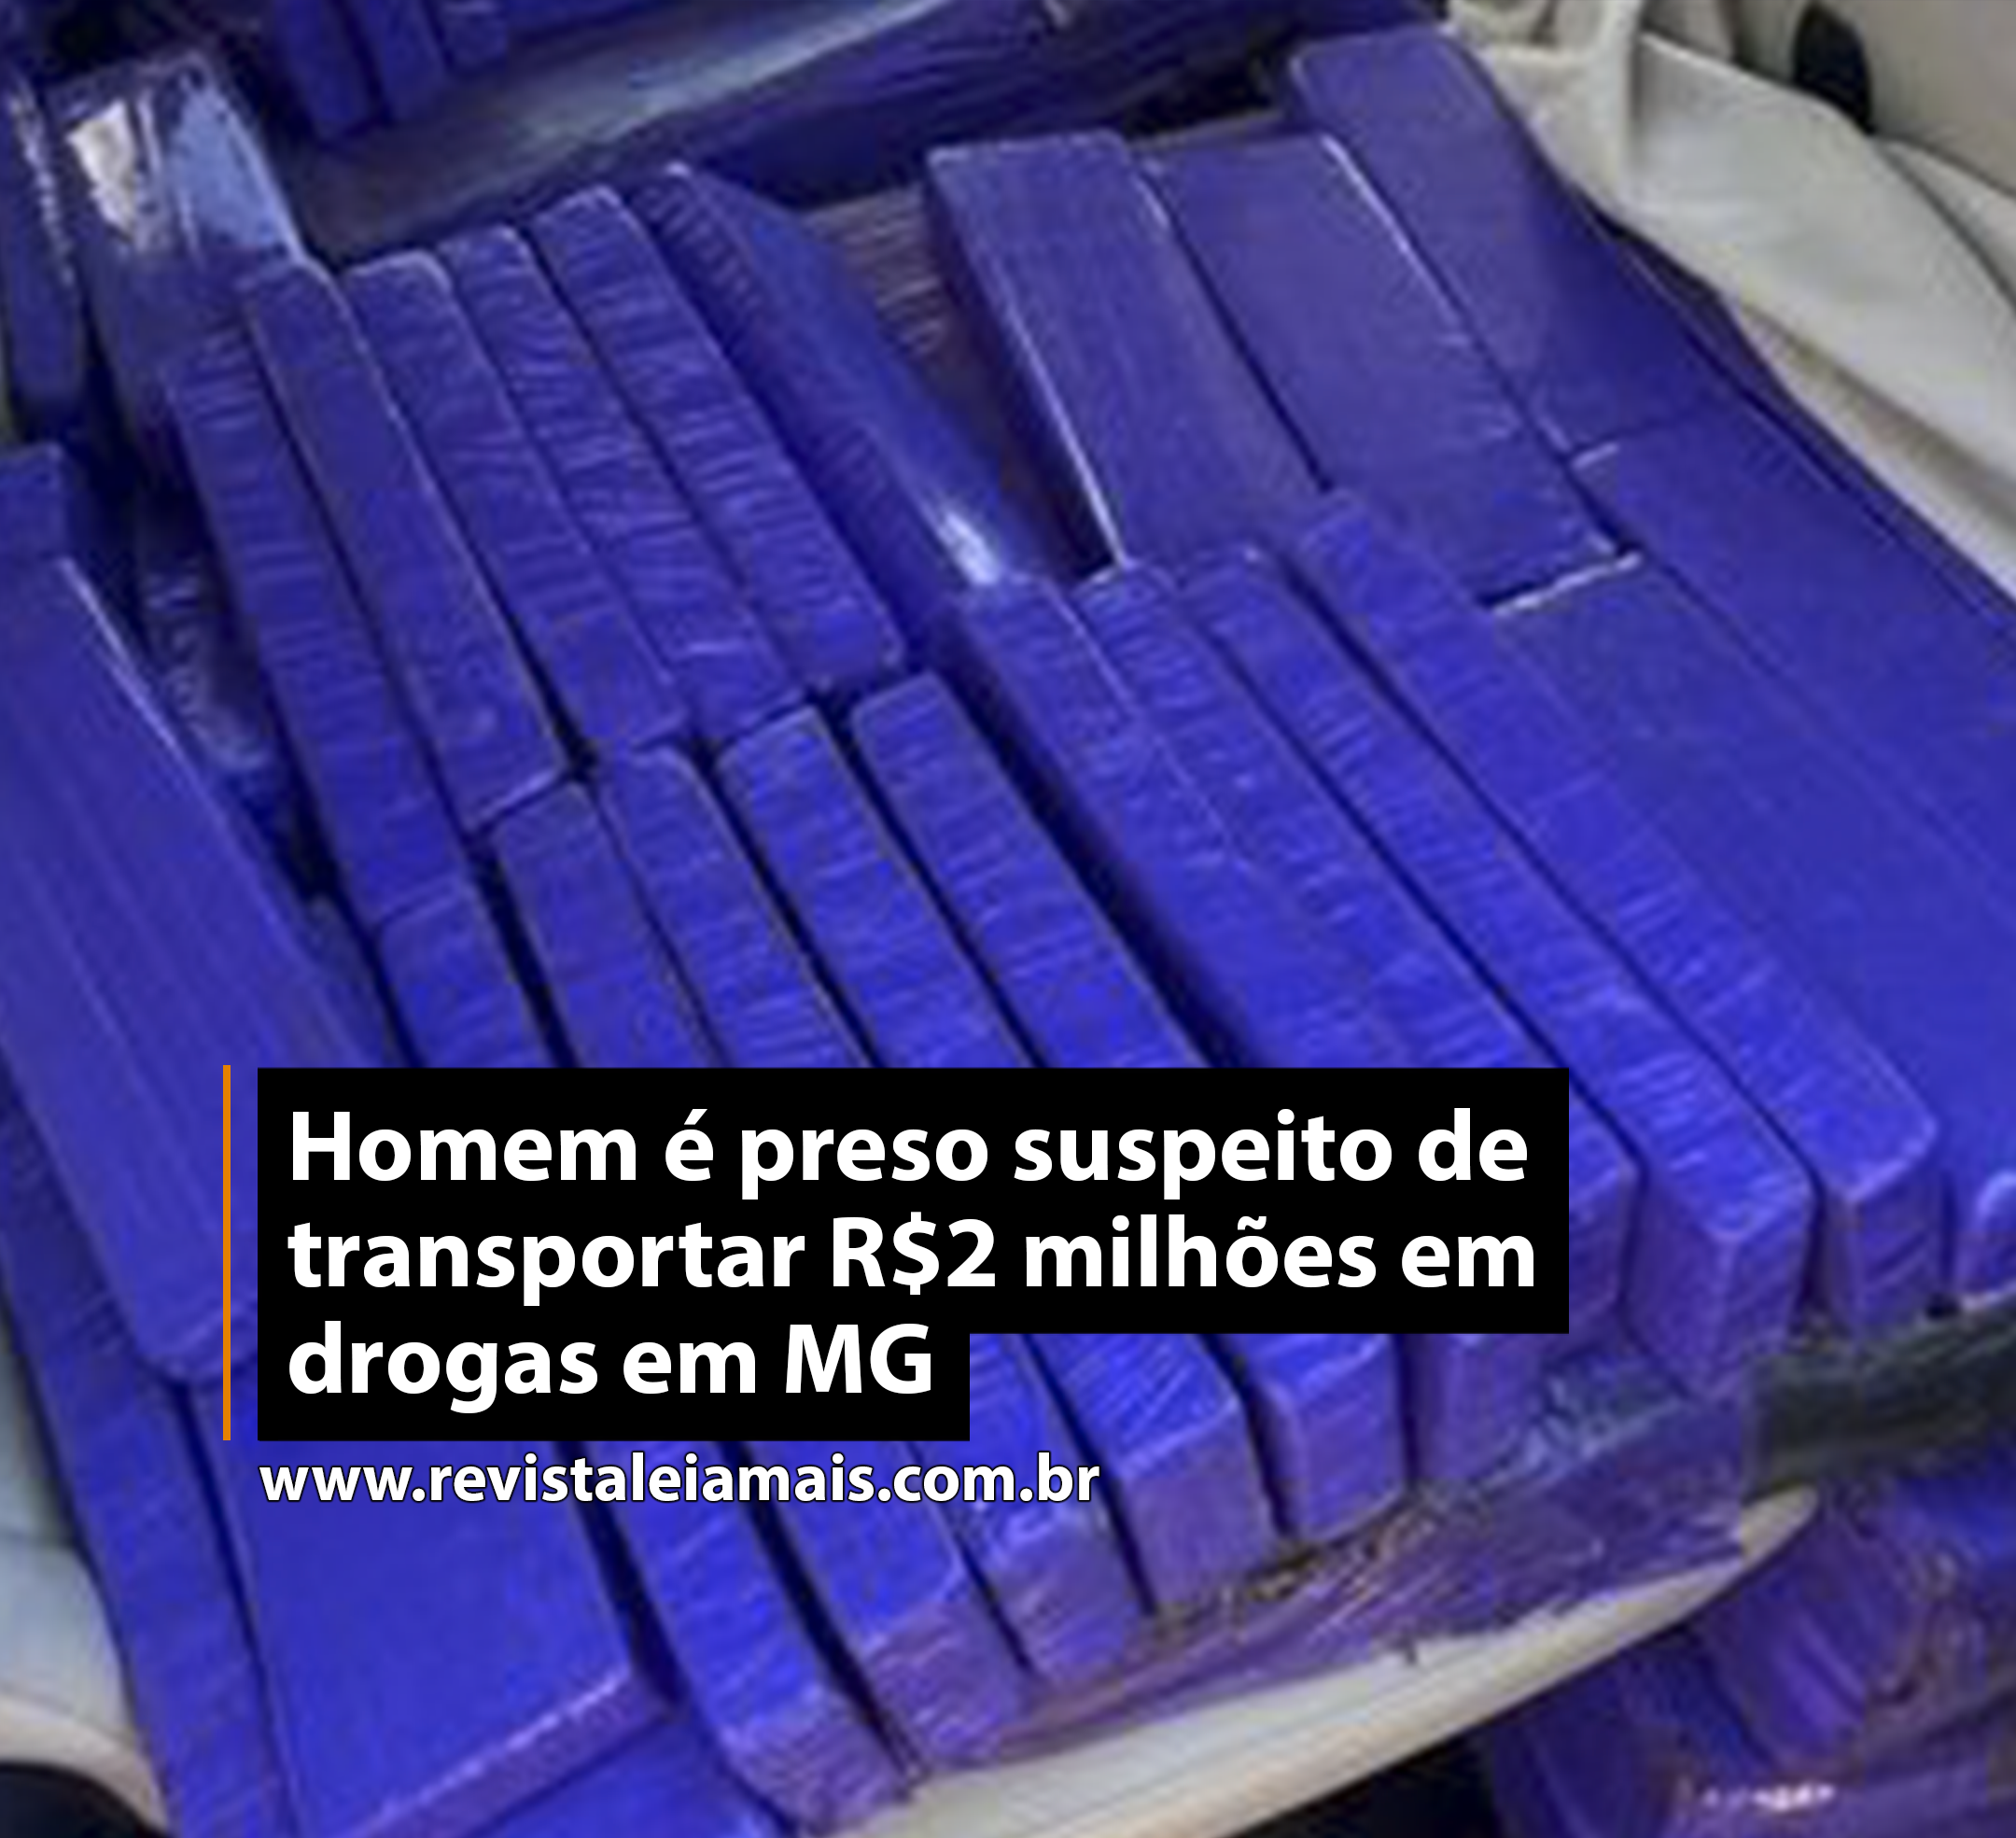 Homem é preso suspeito de transportar R$2 milhões em drogas em MG